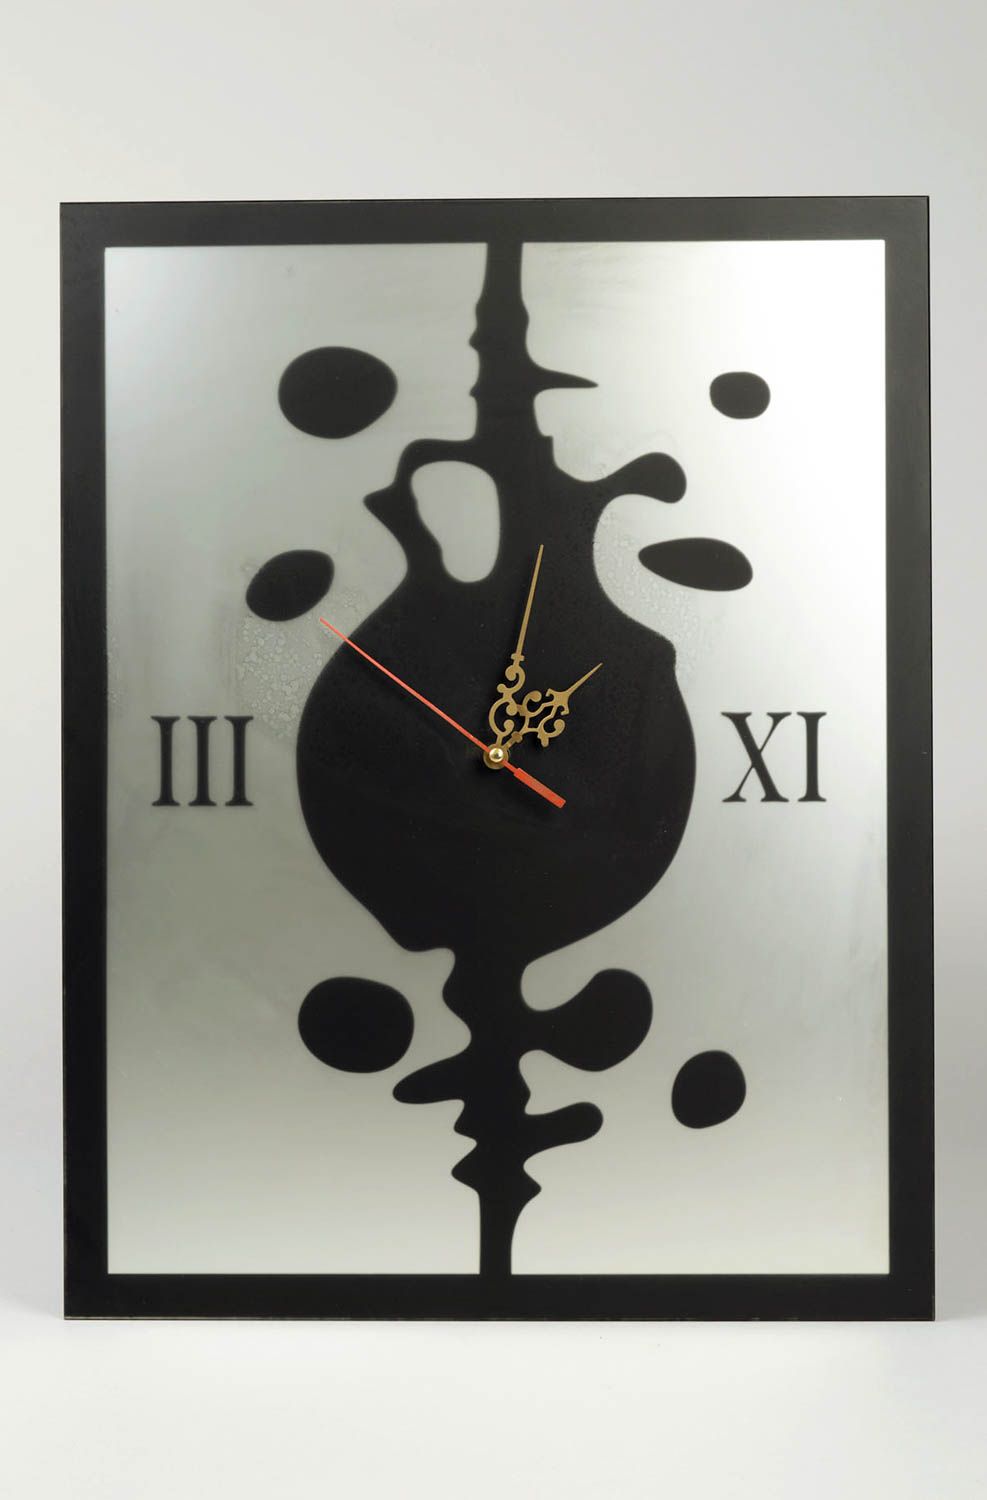 Модные часы ручной работы настенные часы из стекла необычные настенные часы  фото 2